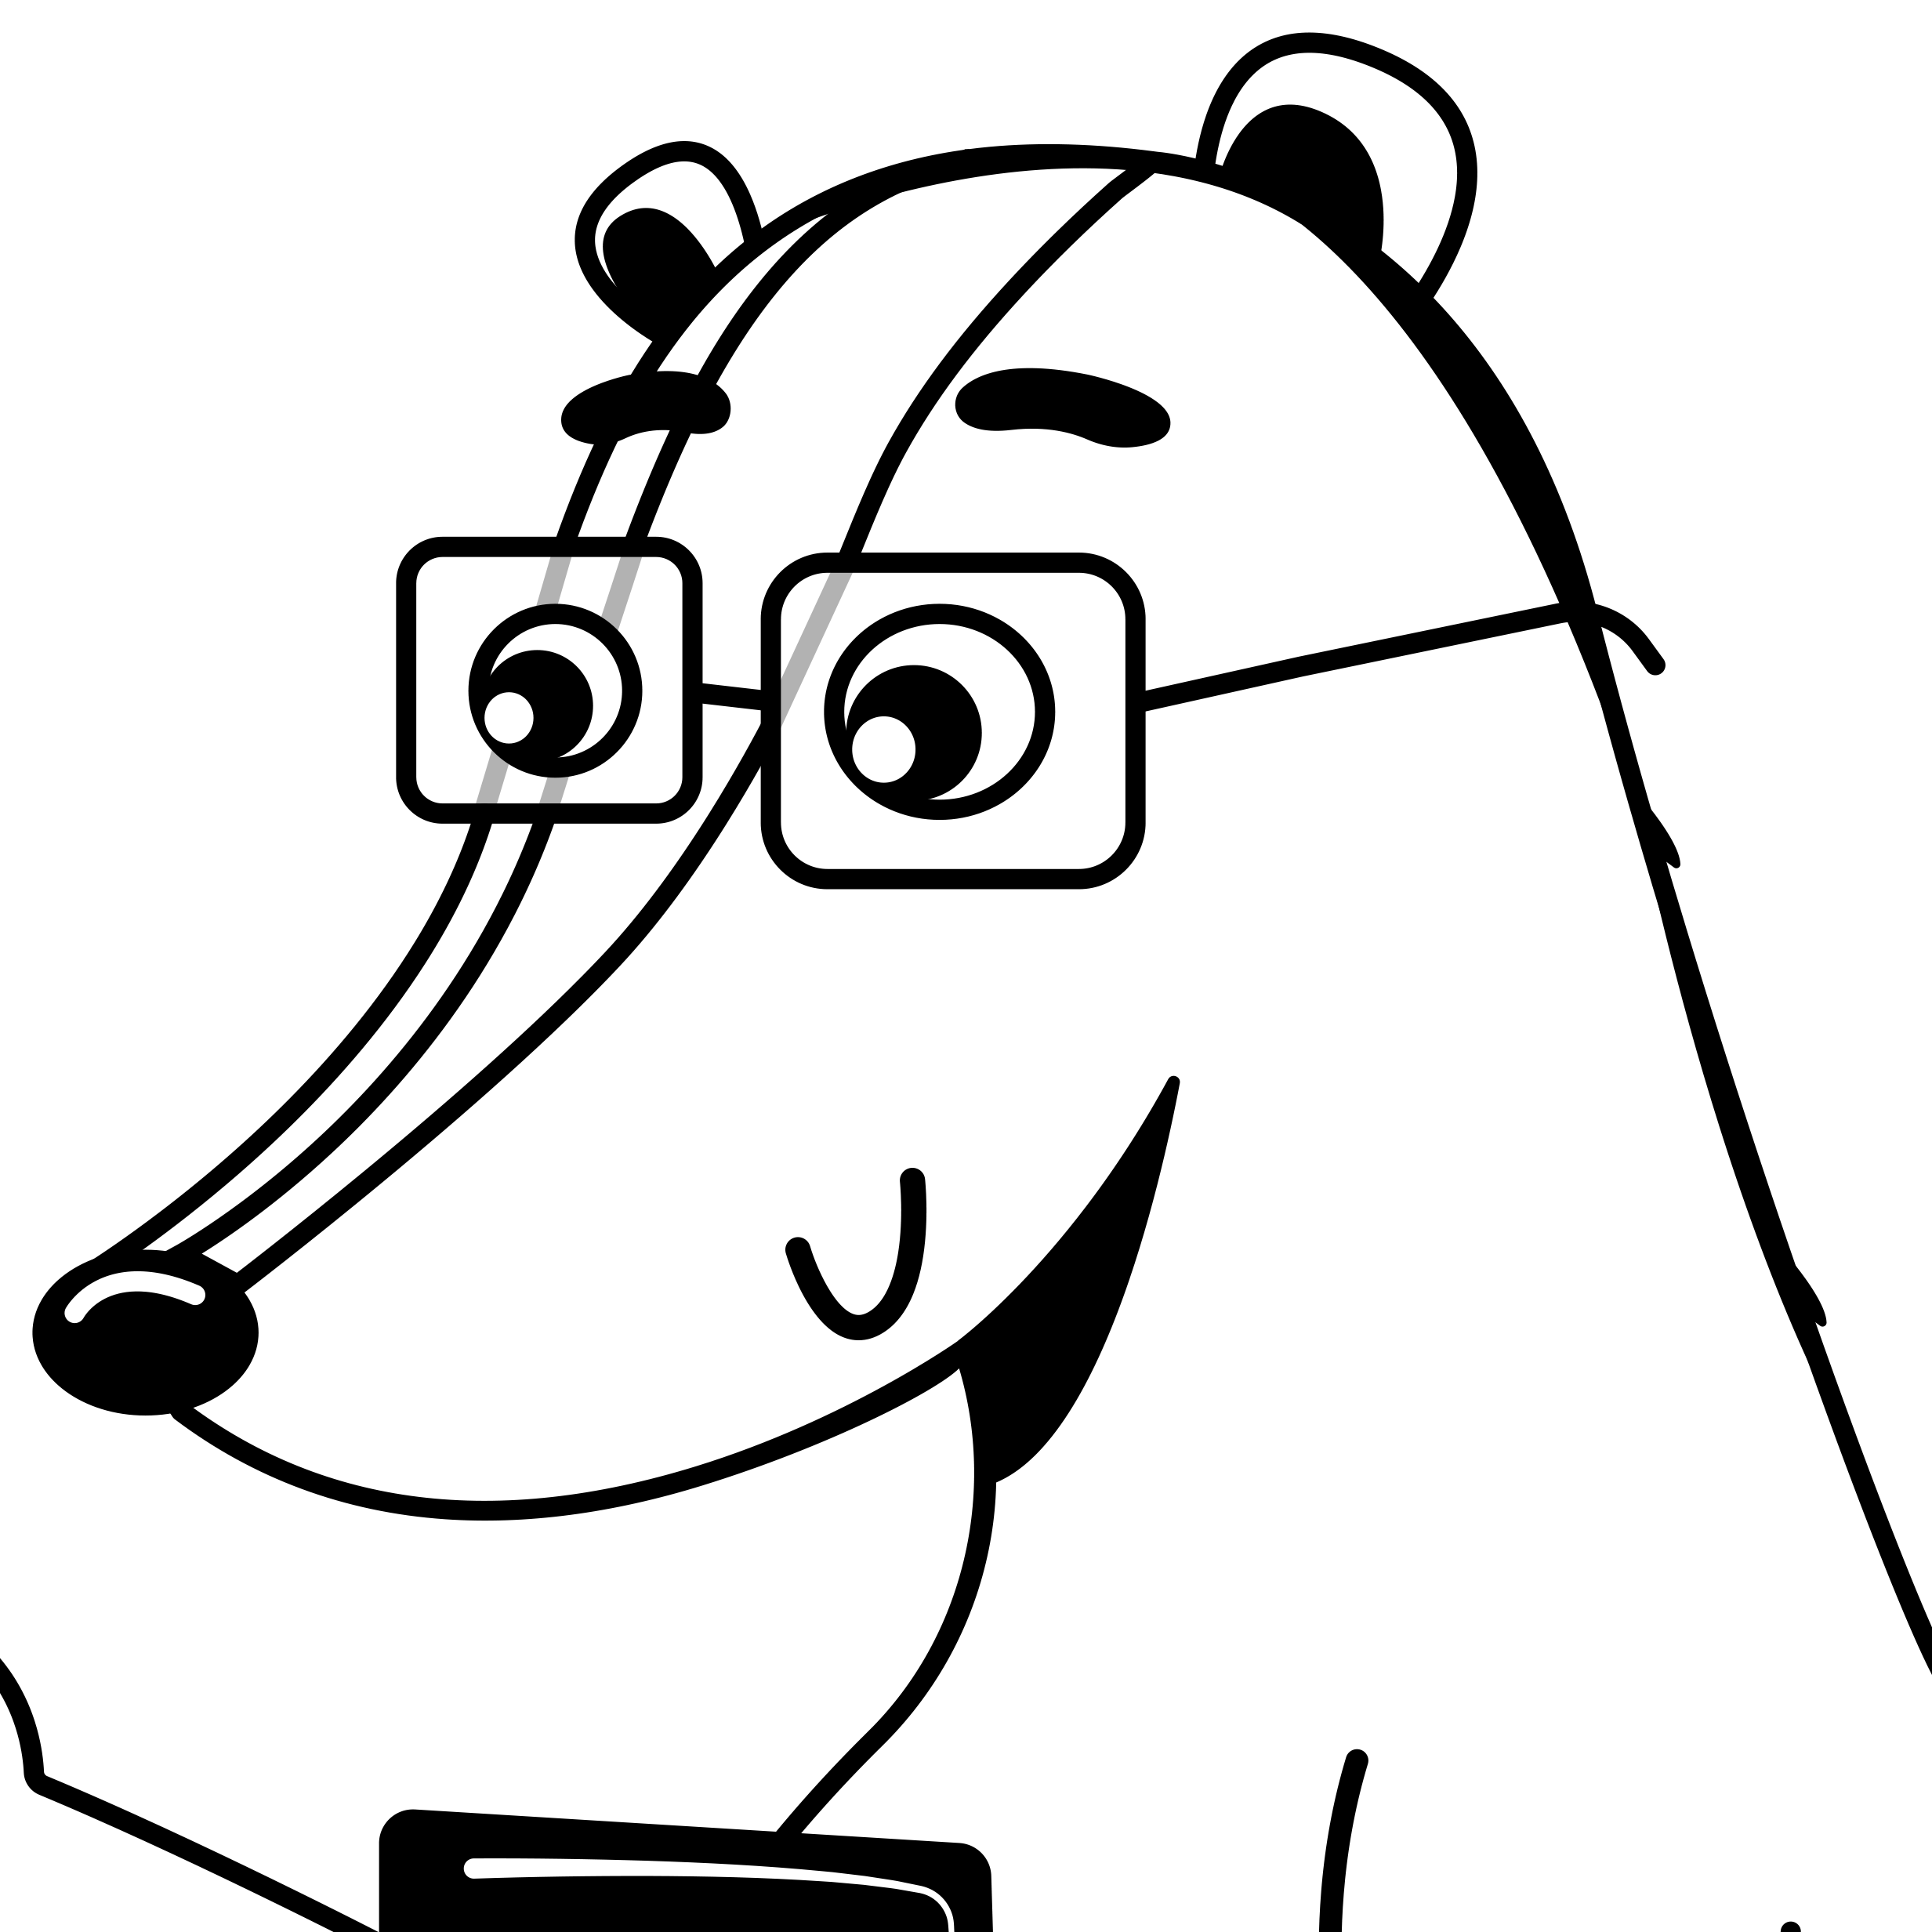 Expense Badger logo